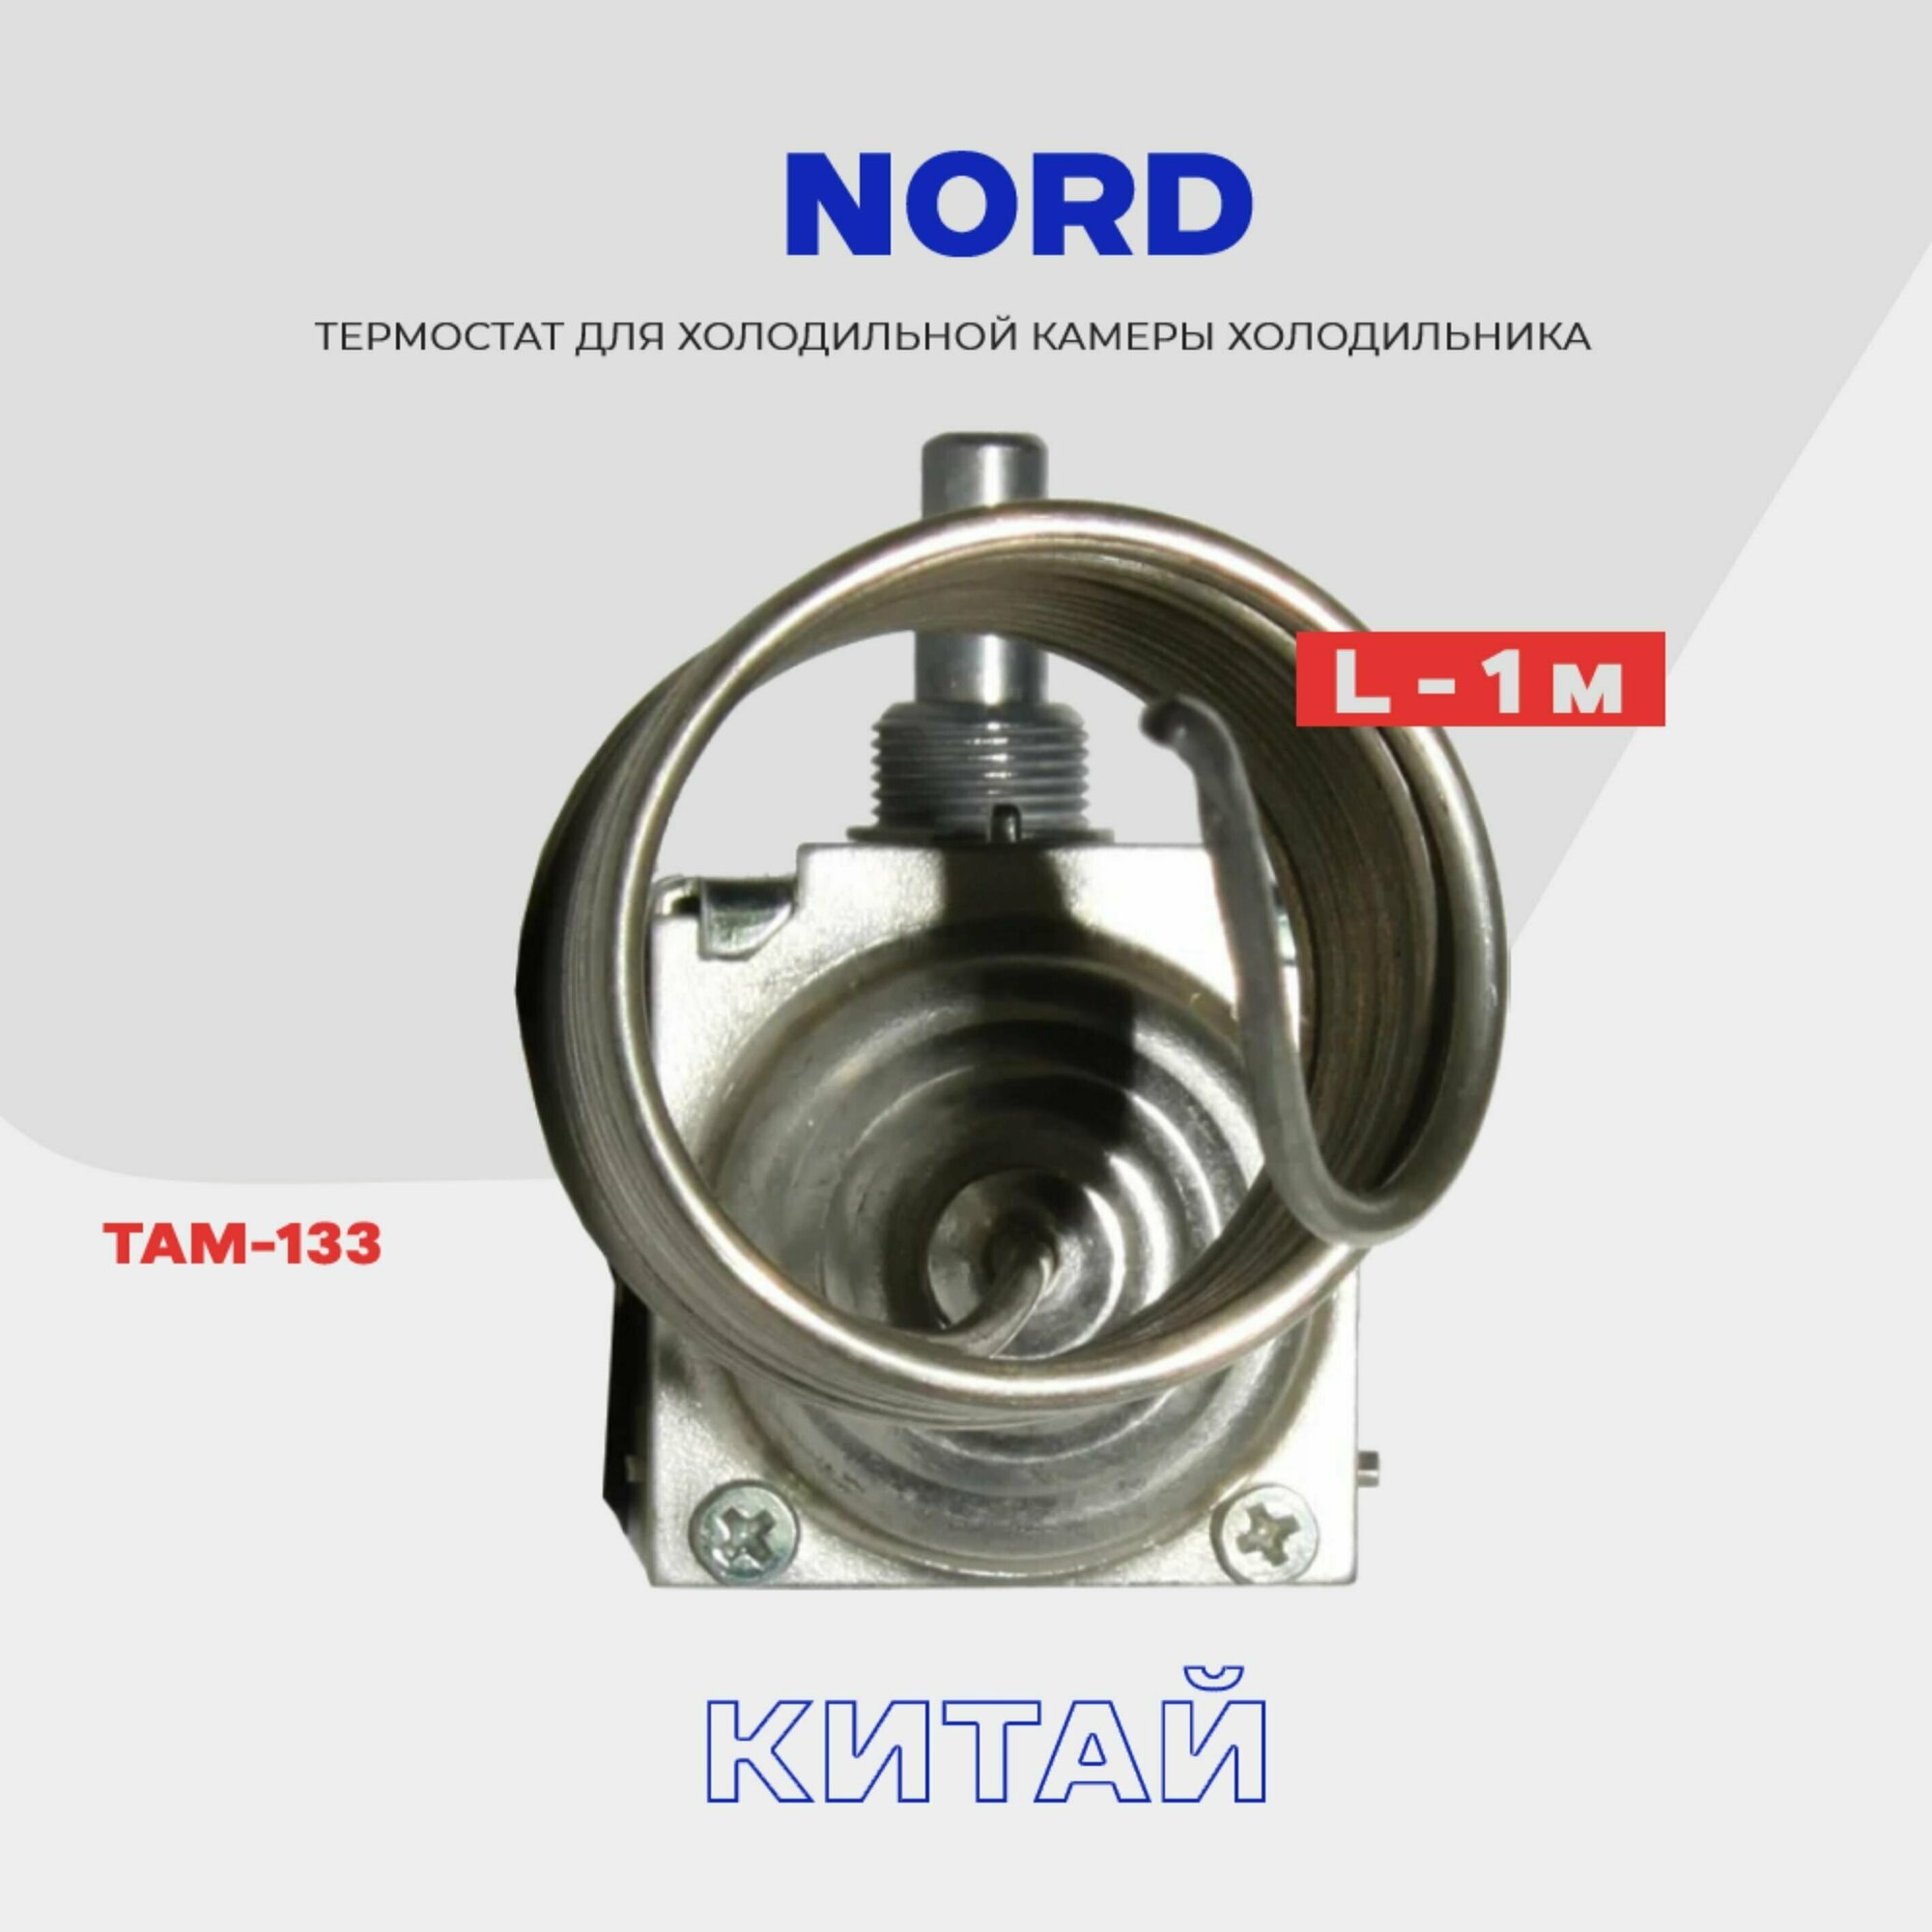 Термостат для холодильника NORD ТАМ-133 ( K59 Q1902 / L2040 - 1,0м ) / Терморегулятор в холодильную камеру